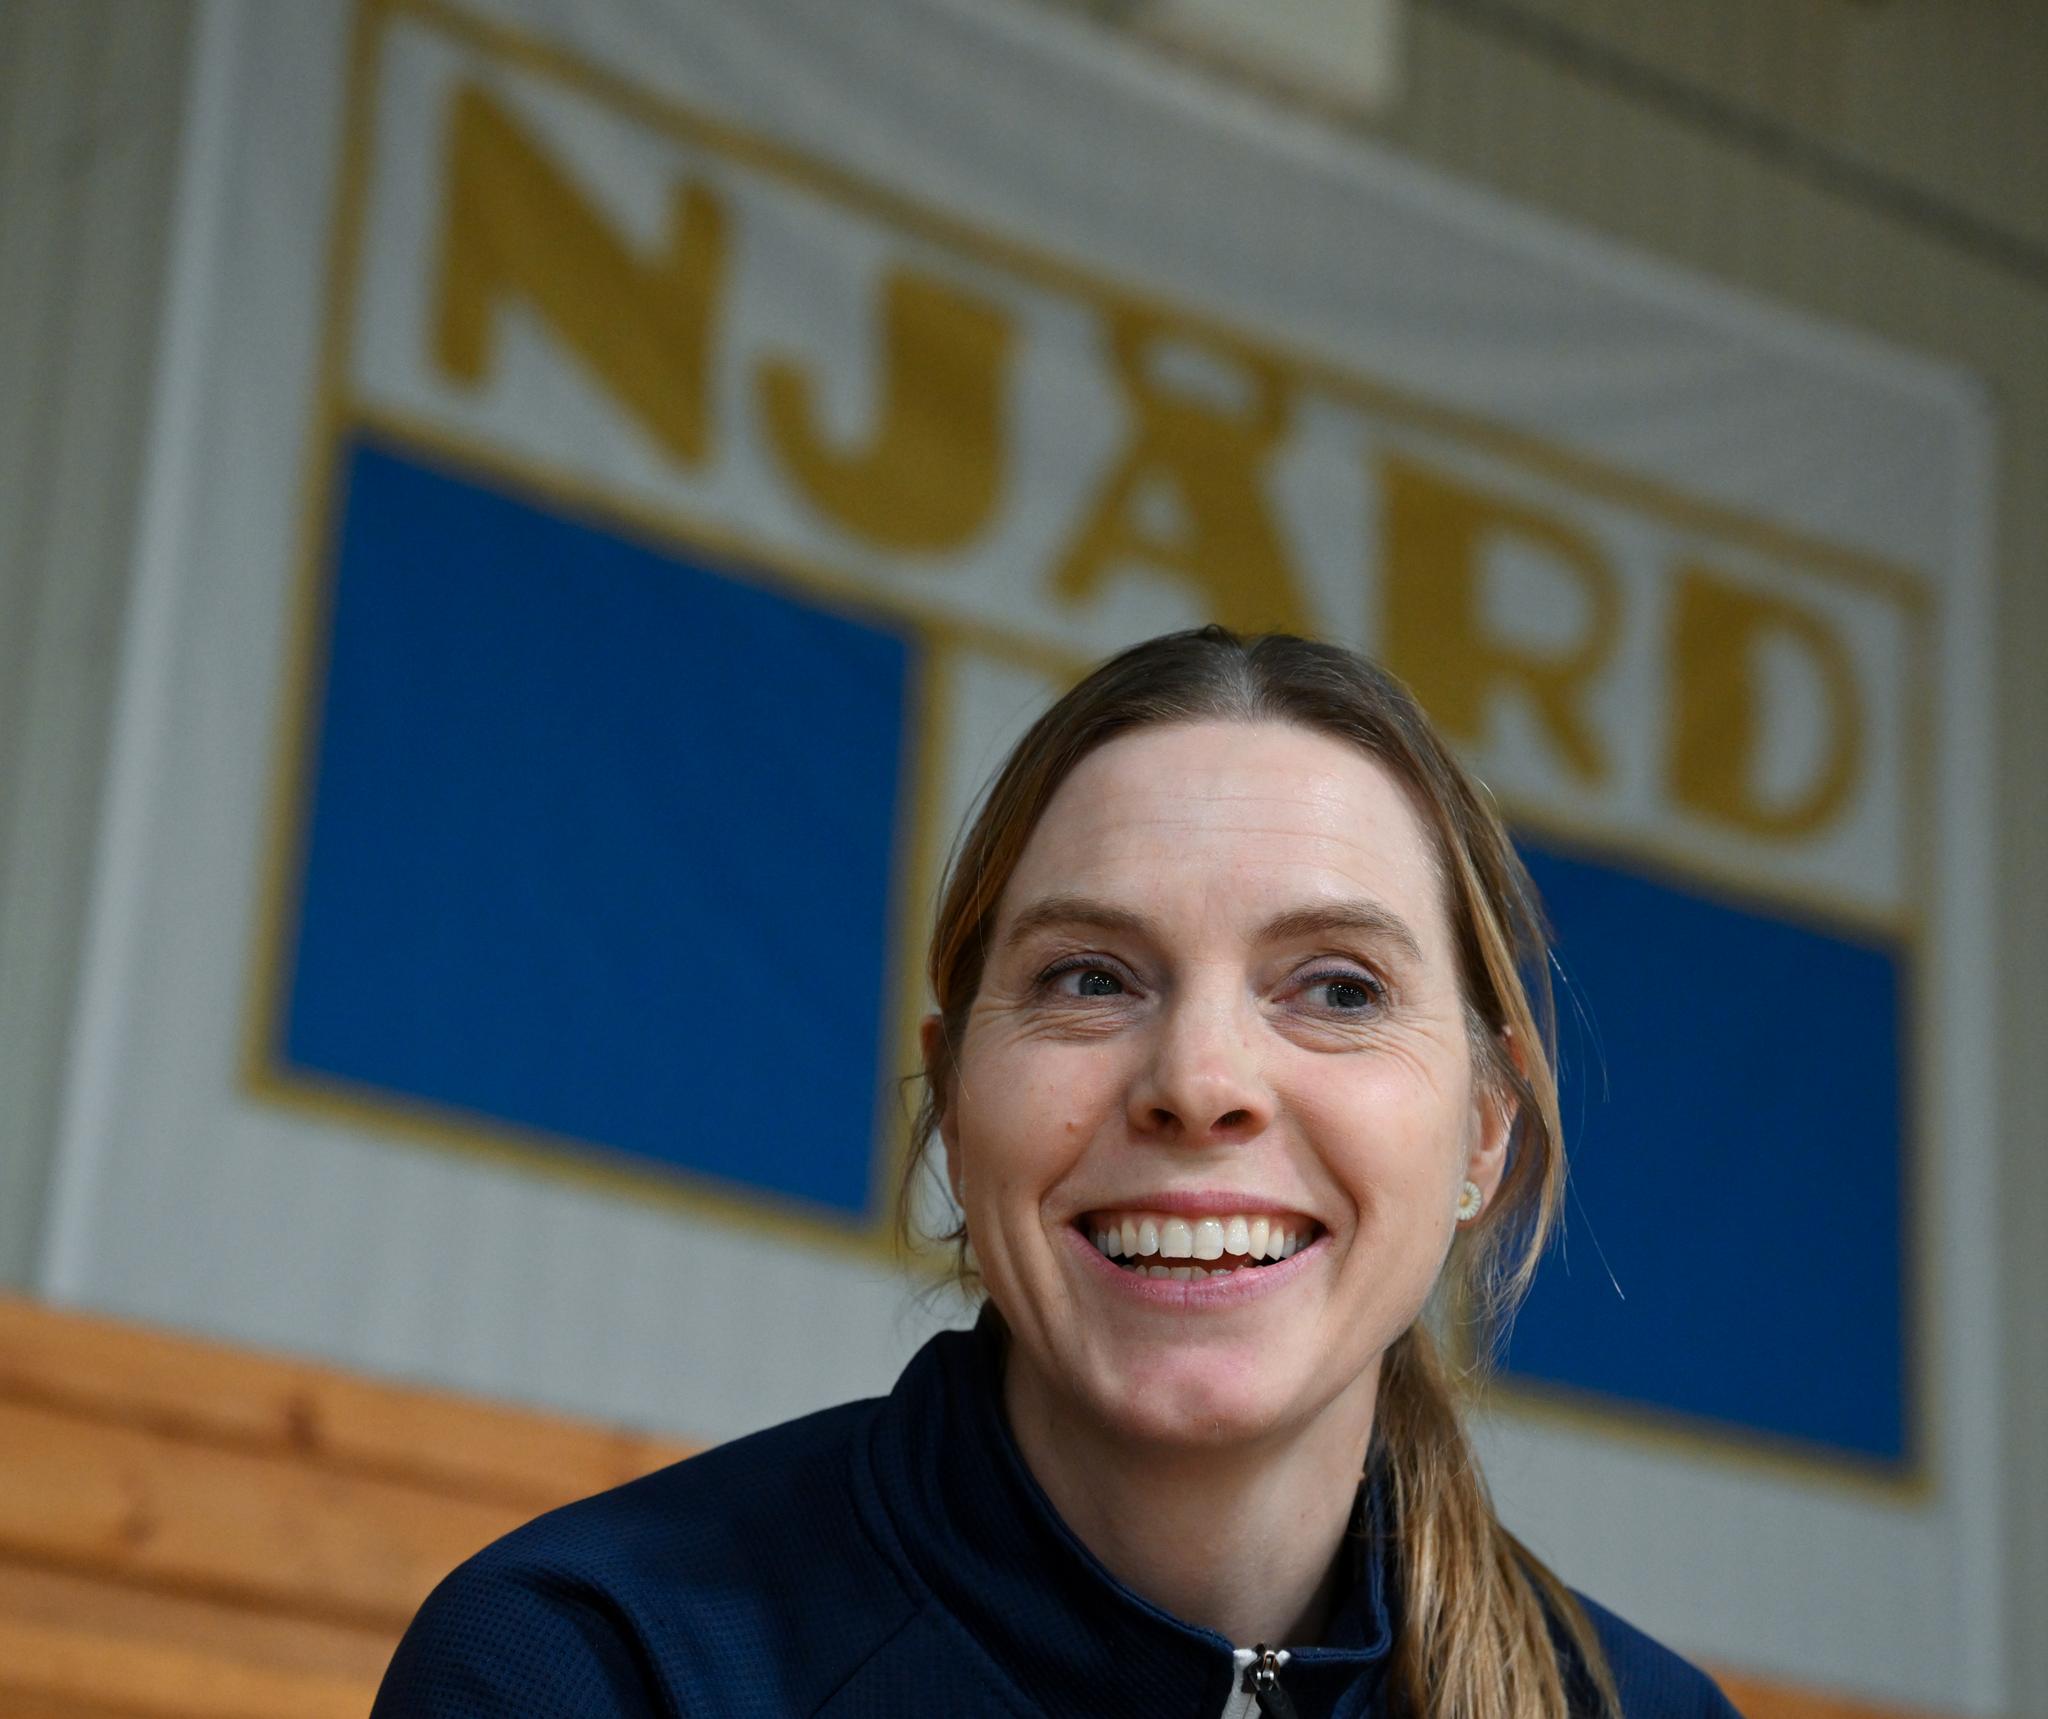  Njård har tidligere hatt lag i eliteserien for både kvinner og menn, men Else-Marthe Sørlie Lybekks klubb satser nå kune på bredden.